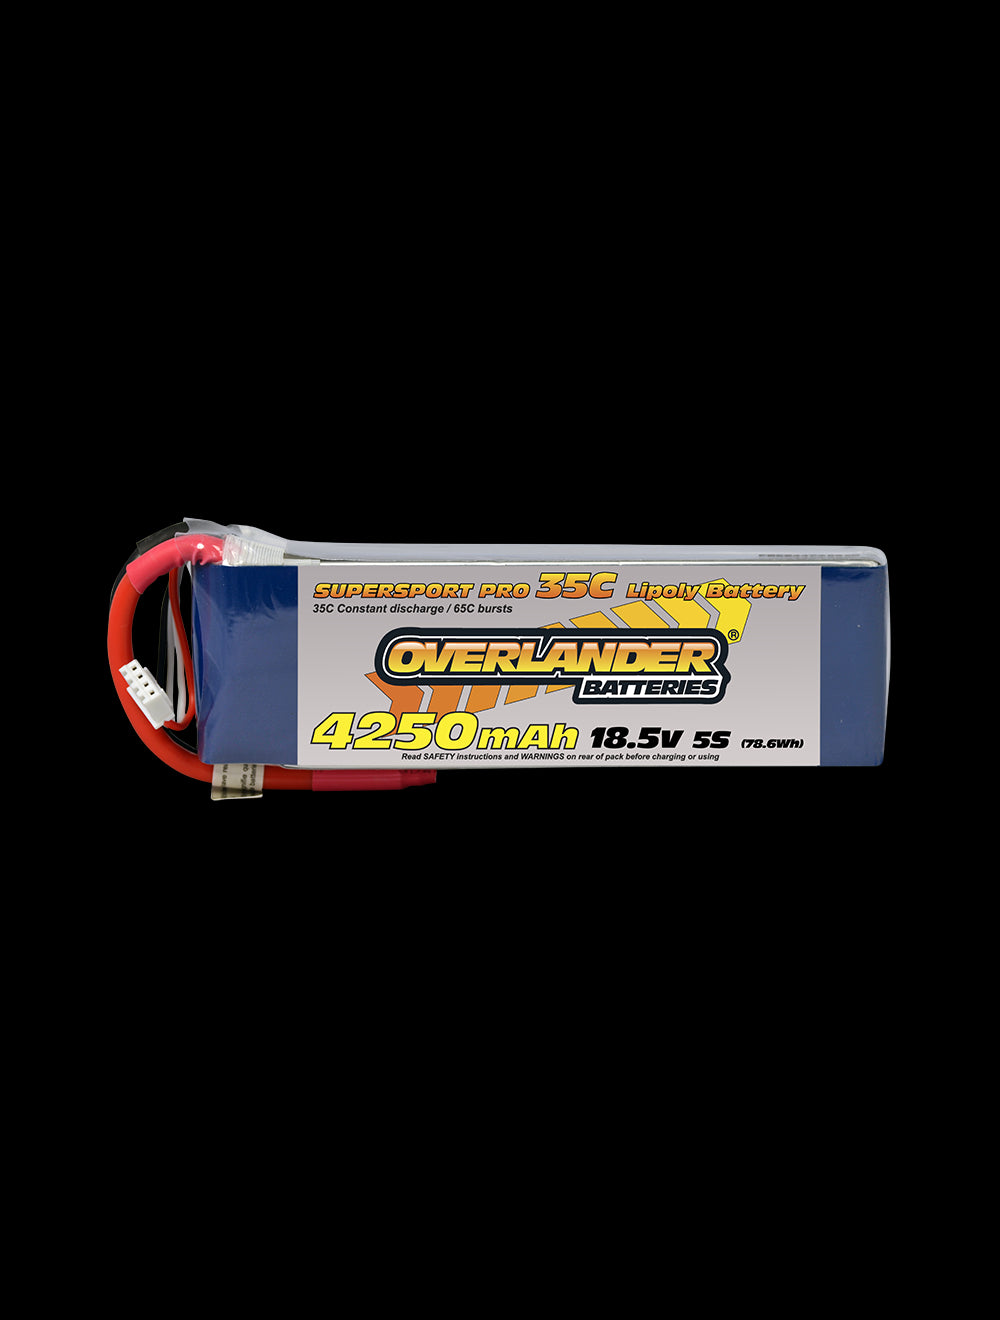 Overlander 4250mAh 18.5V 5S 35C Supersport Pro LiPo Battery - EC5 Connector 2477